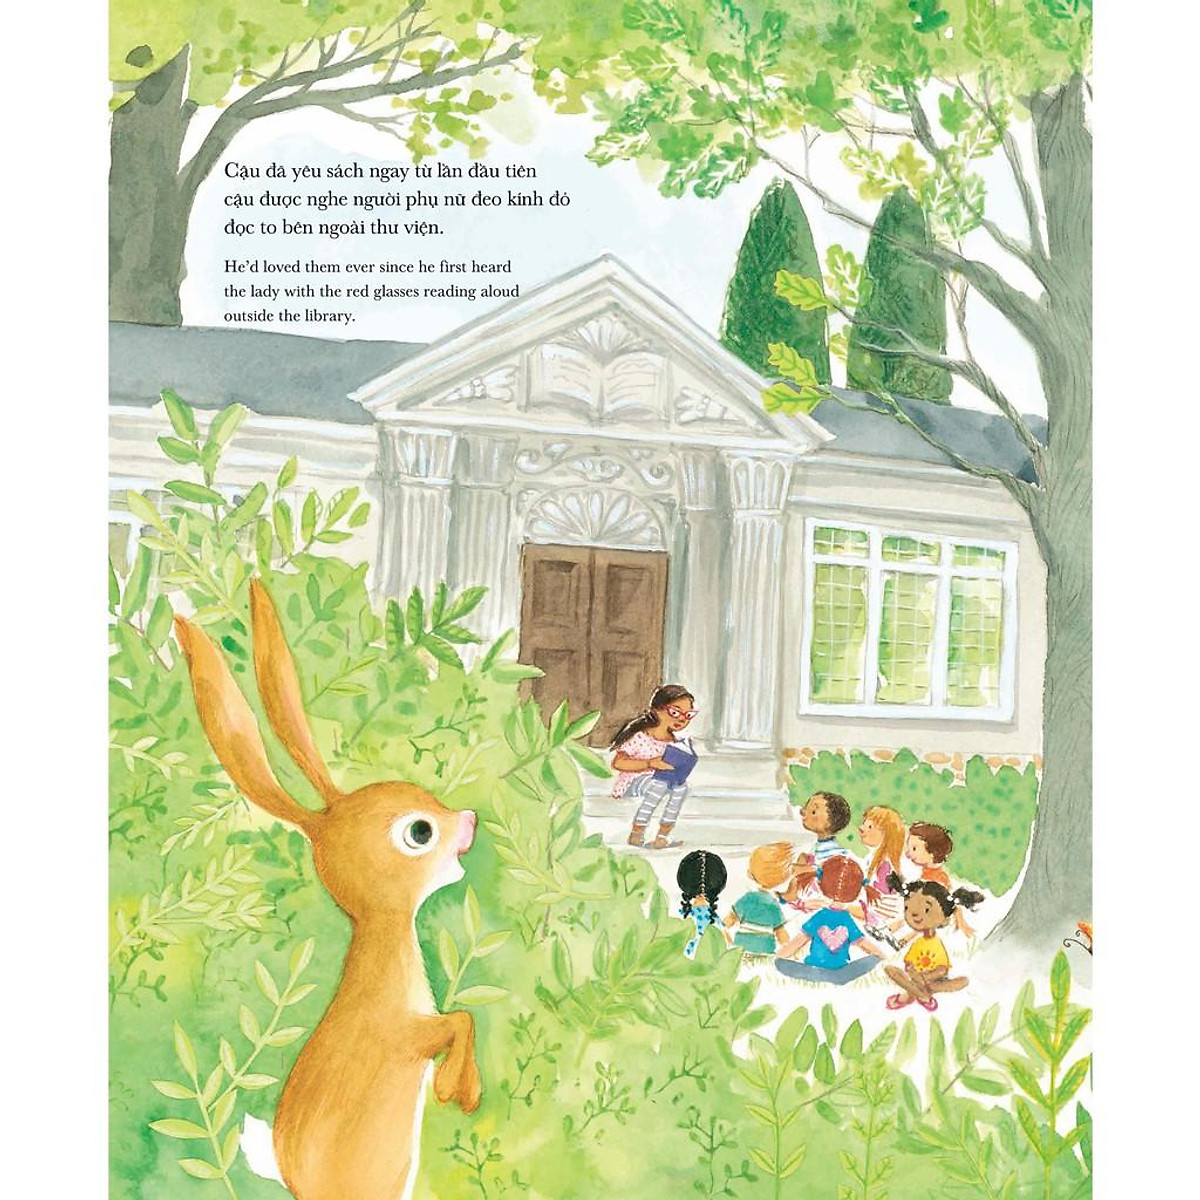 Sách song ngữ Câu lạc bộ sách của thỏ con